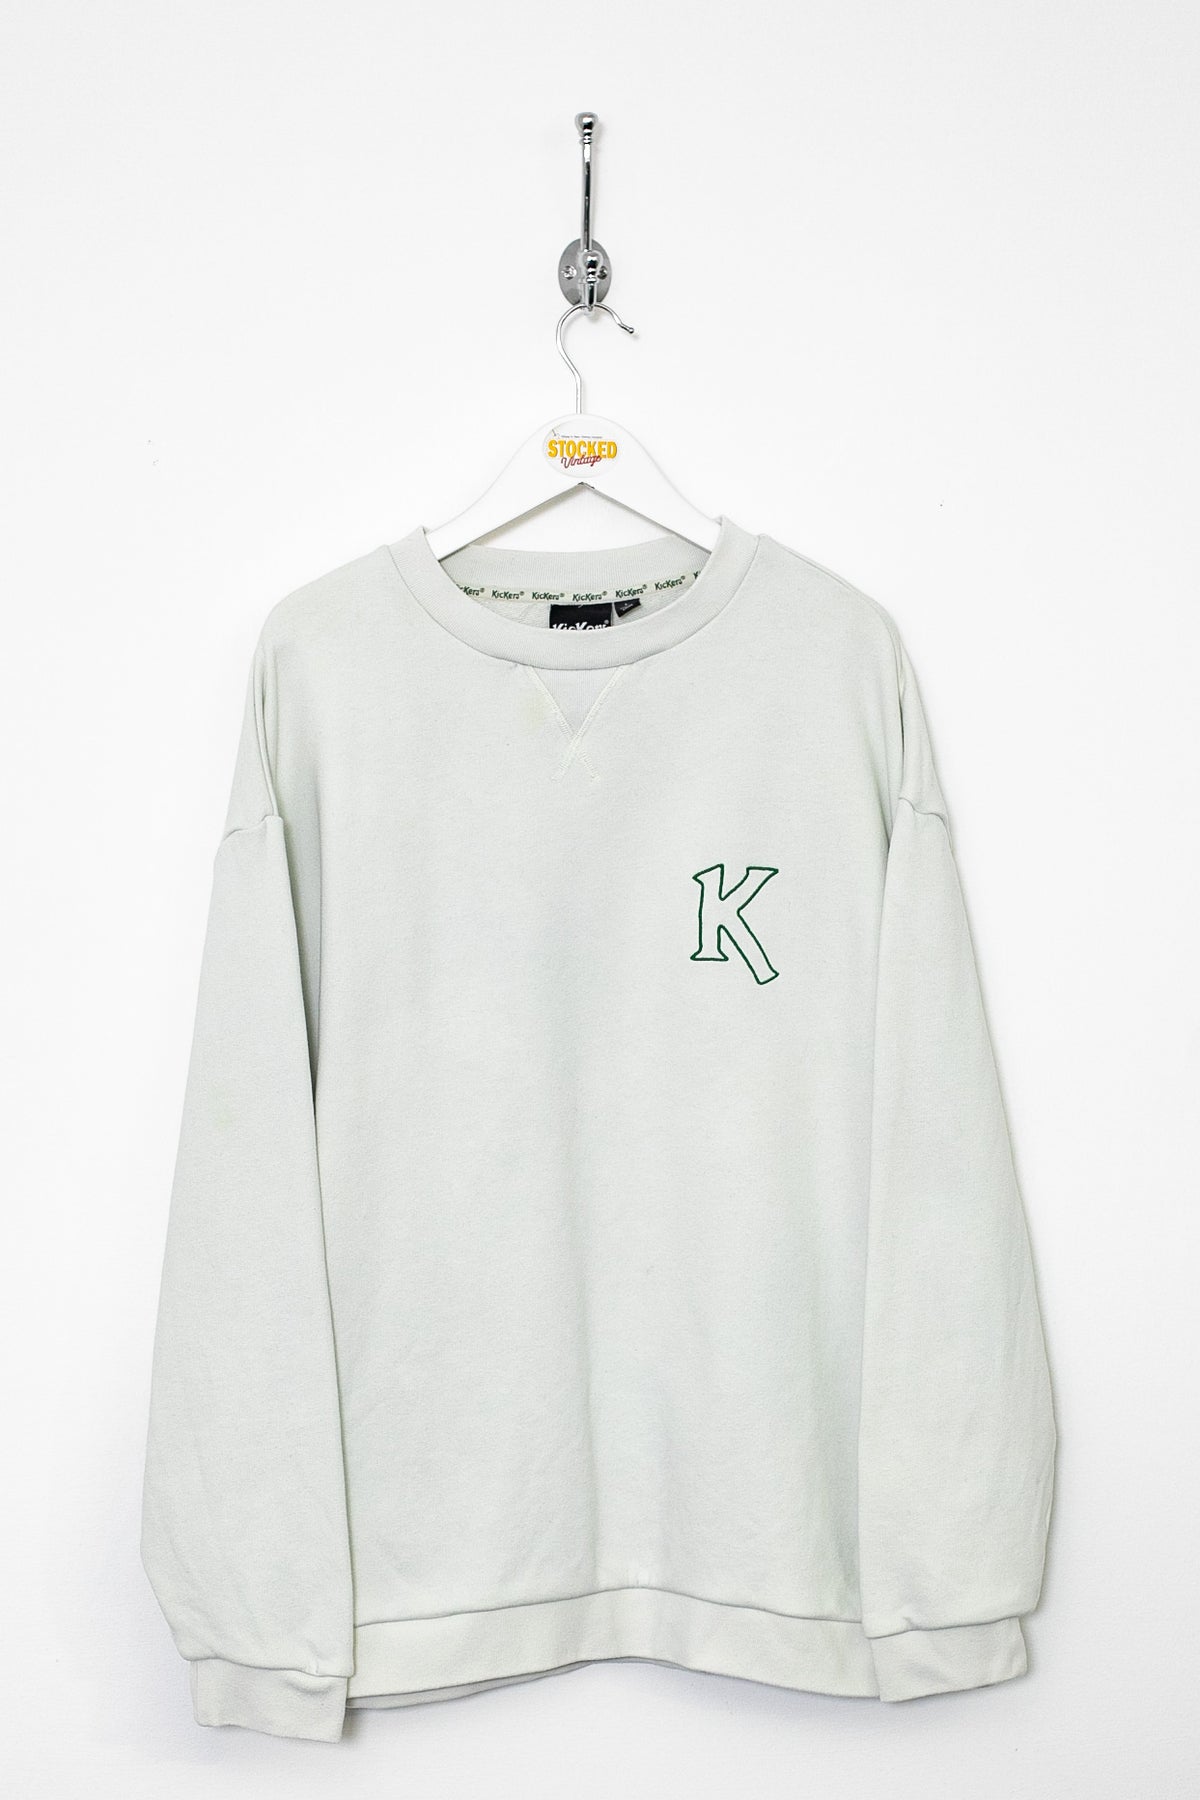 00s Kickers Sweatshirt (L)